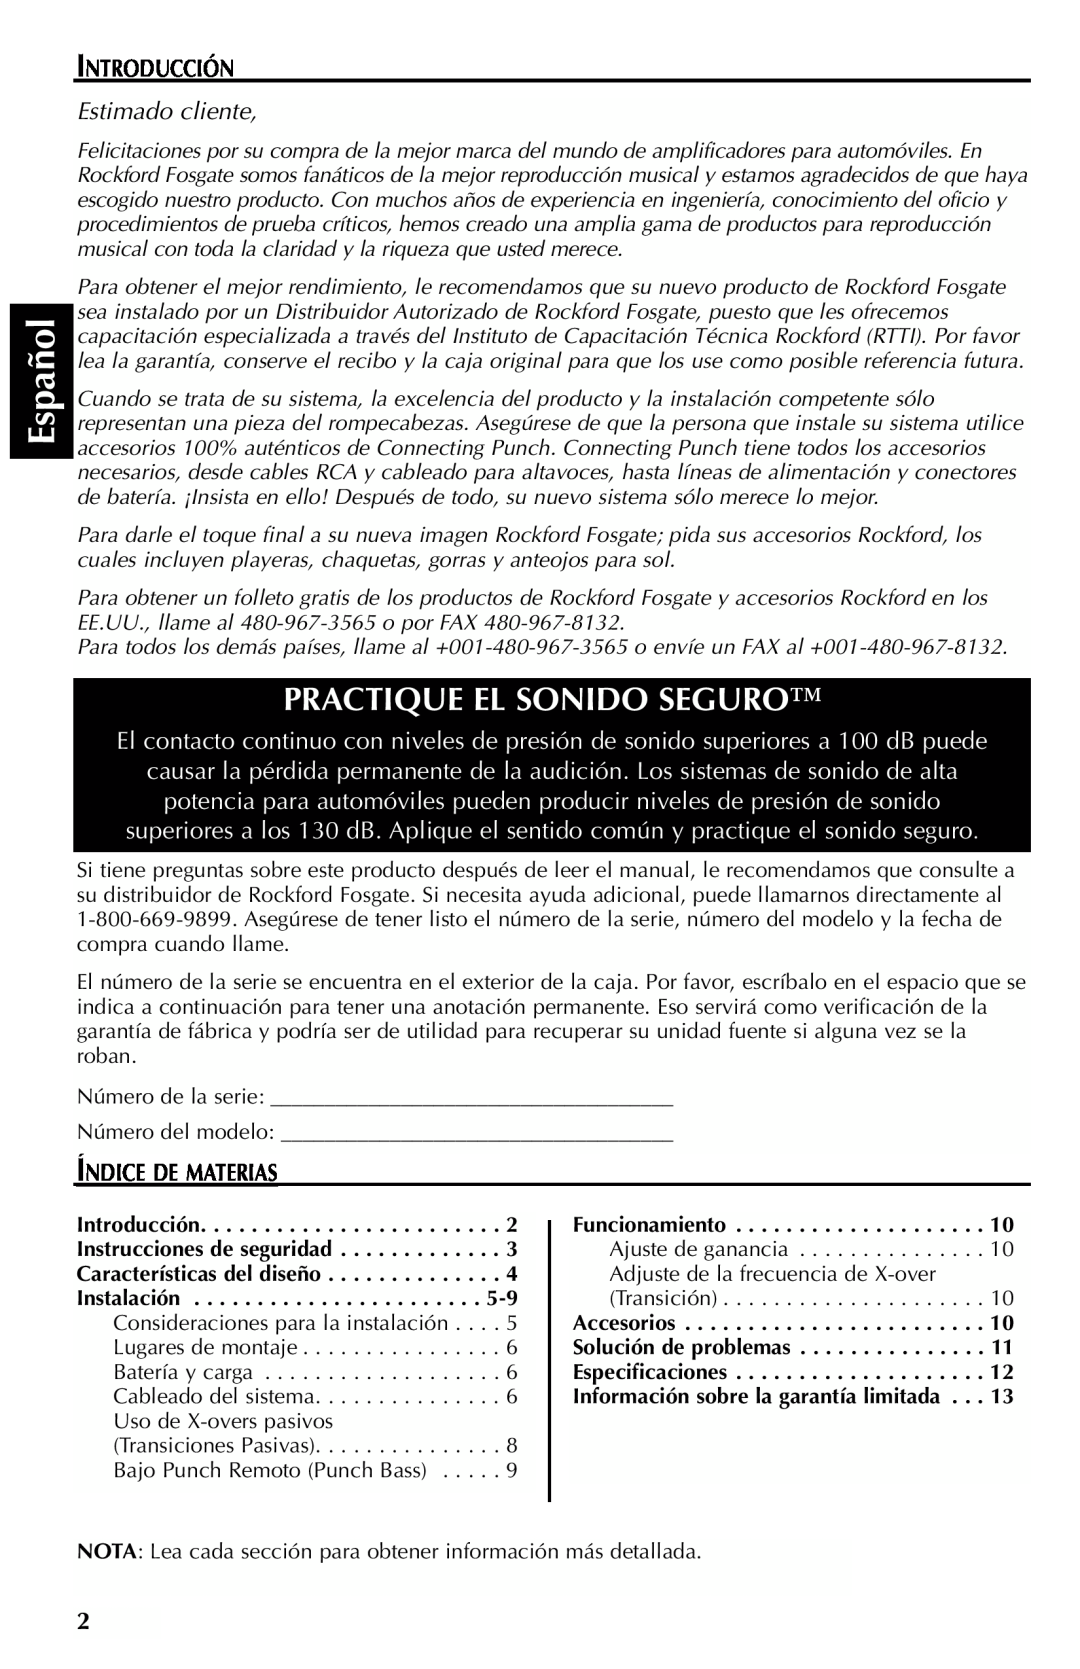 Rockford Fosgate 301SP, 401SP manual Español, Practique El Sonido Seguro, Introducción, Estimado cliente, Índice De Materias 